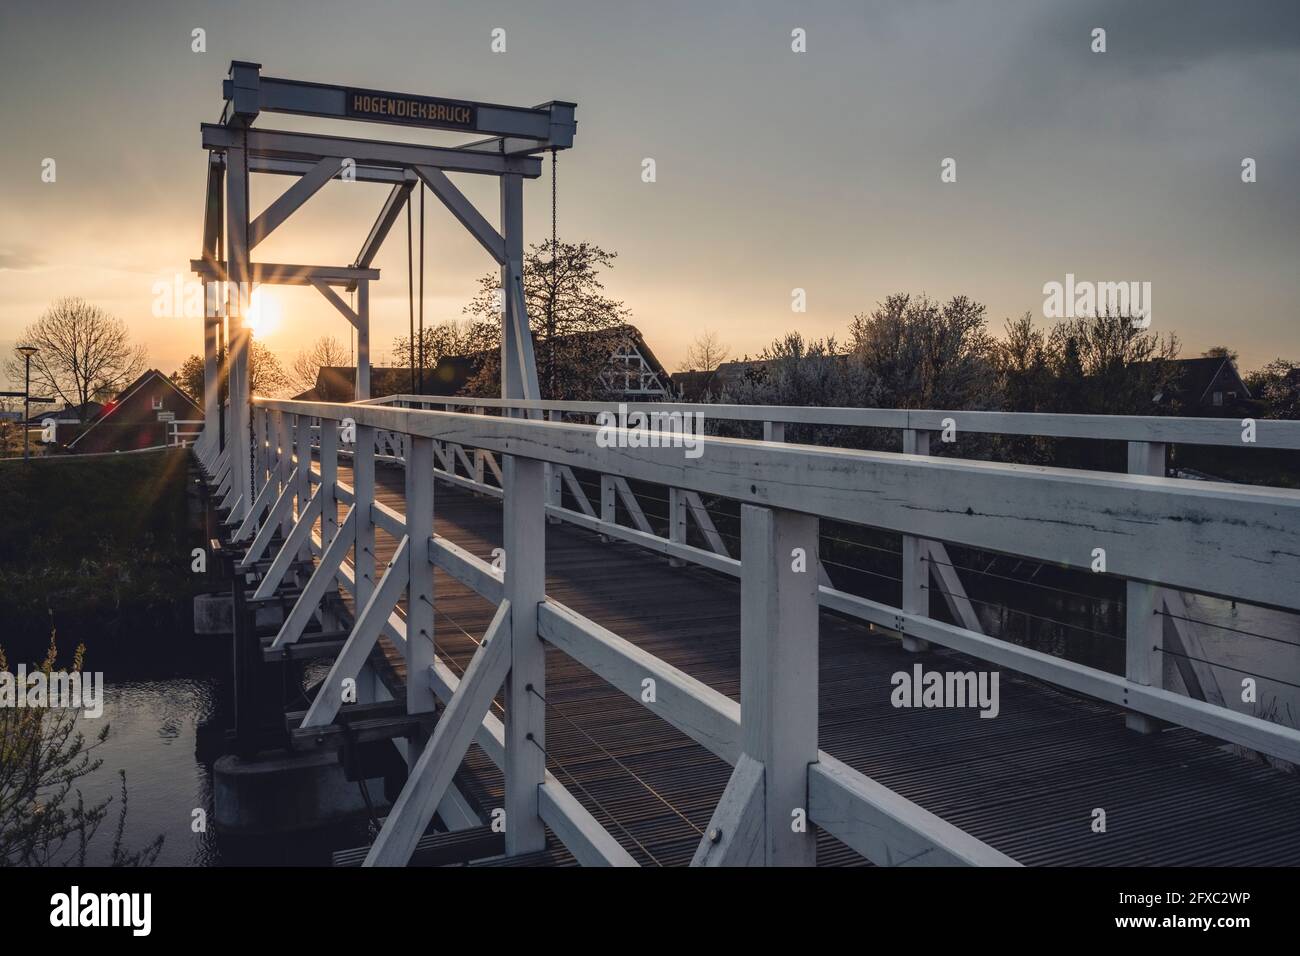 Deutschland, Altes Land, Hogendiekbrücke Holzsteg bei Sonnenuntergang Stockfoto